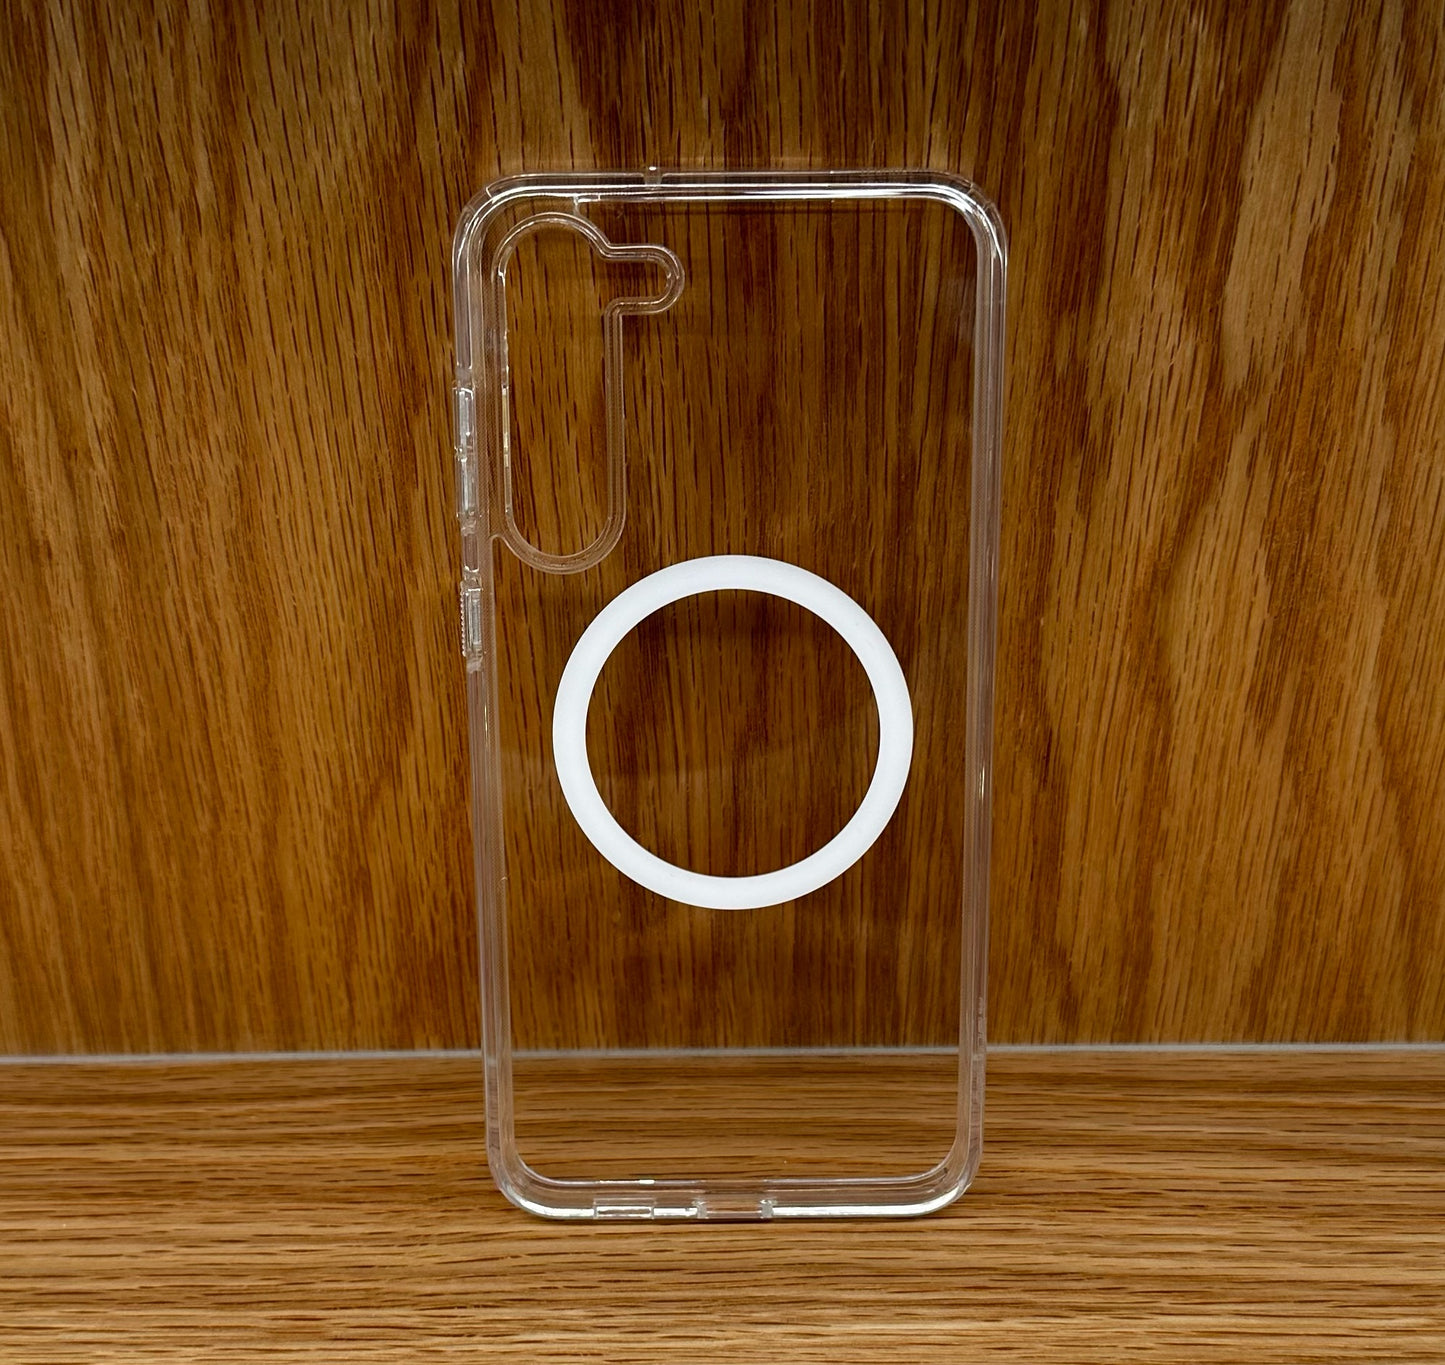 Spigen Series cases for Apple iPhones